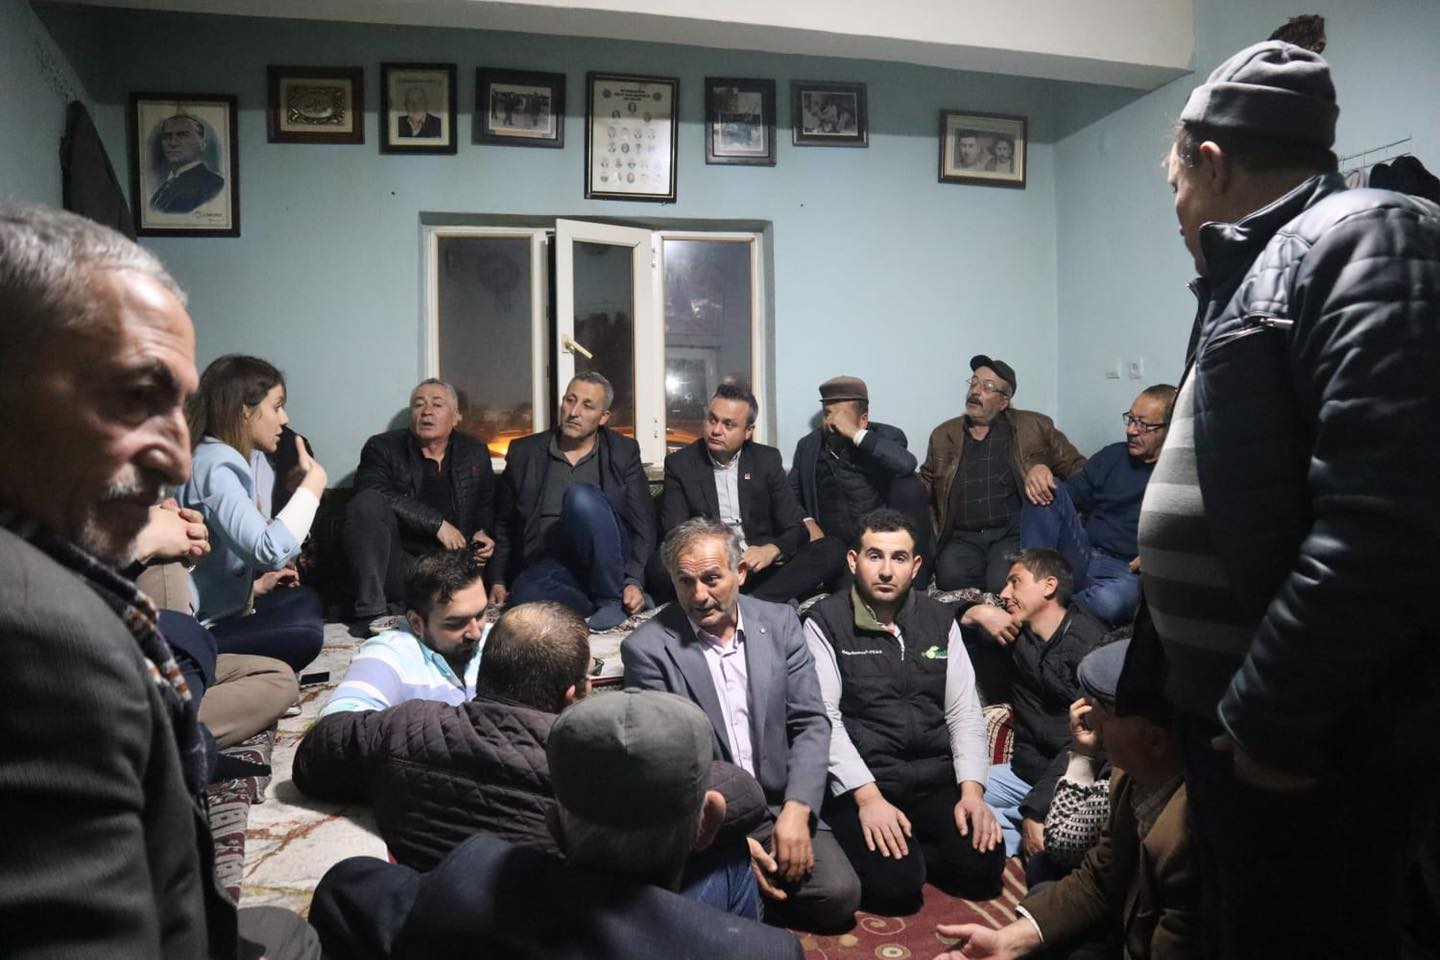 CHP Afyonkarahisar İl Başkanı Faruk Duha Erhan, Fethibey köyünde köylülerle buluştu ve İl Genel Meclisi adayını destekledi.